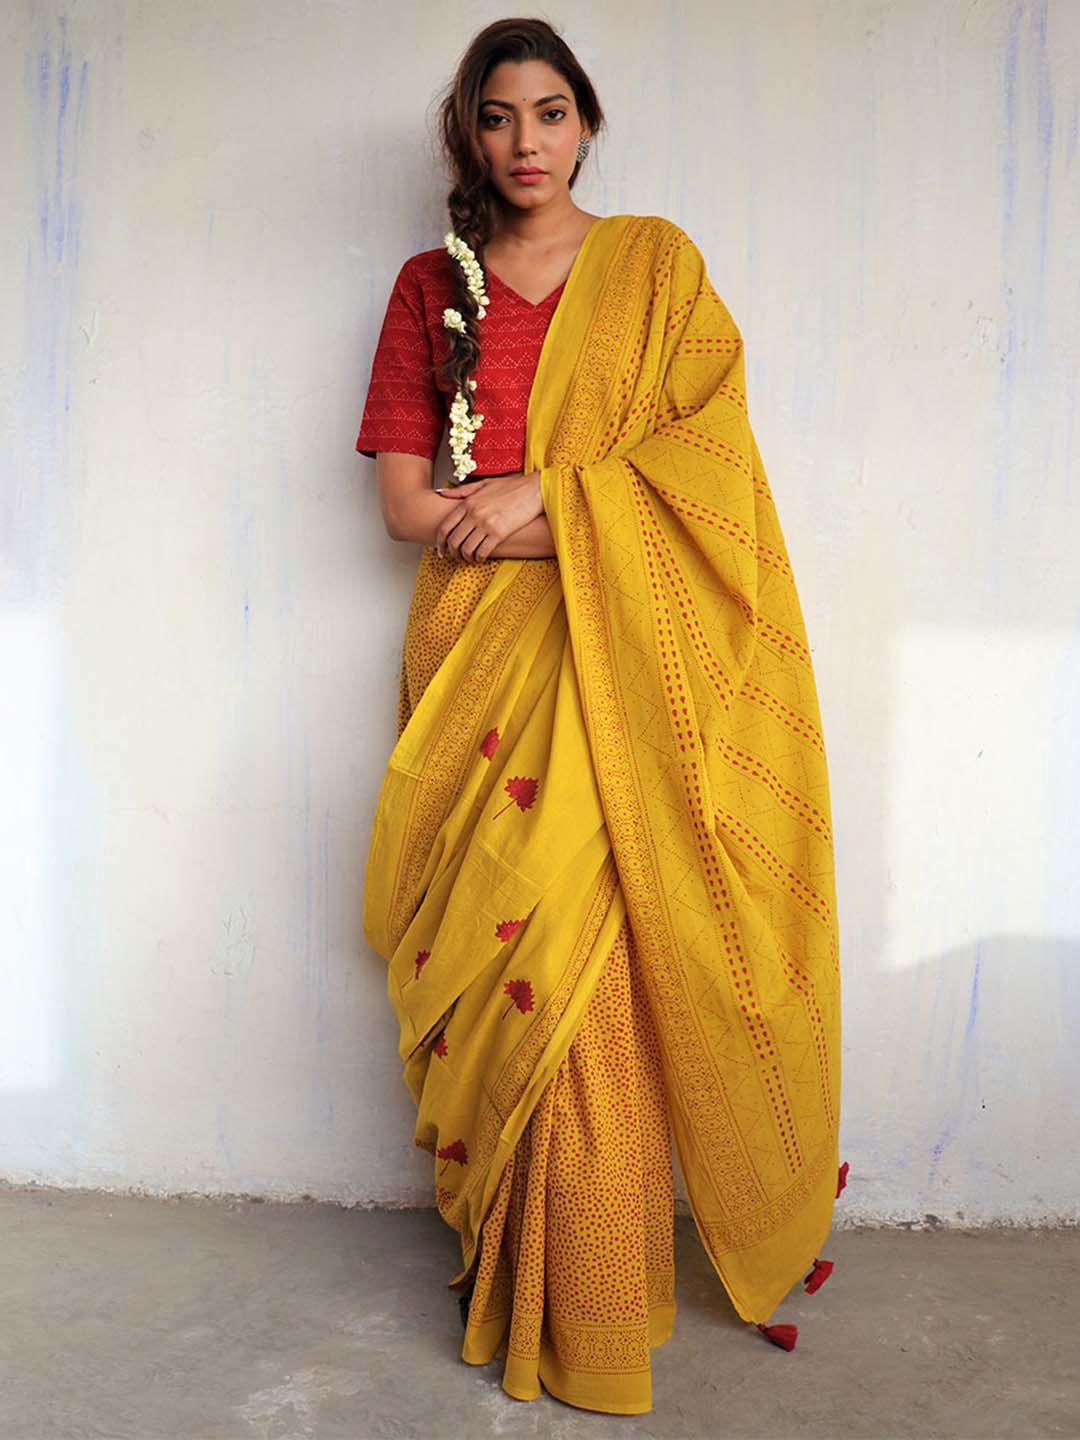 chidiyaa red & yellow pure cotton saree